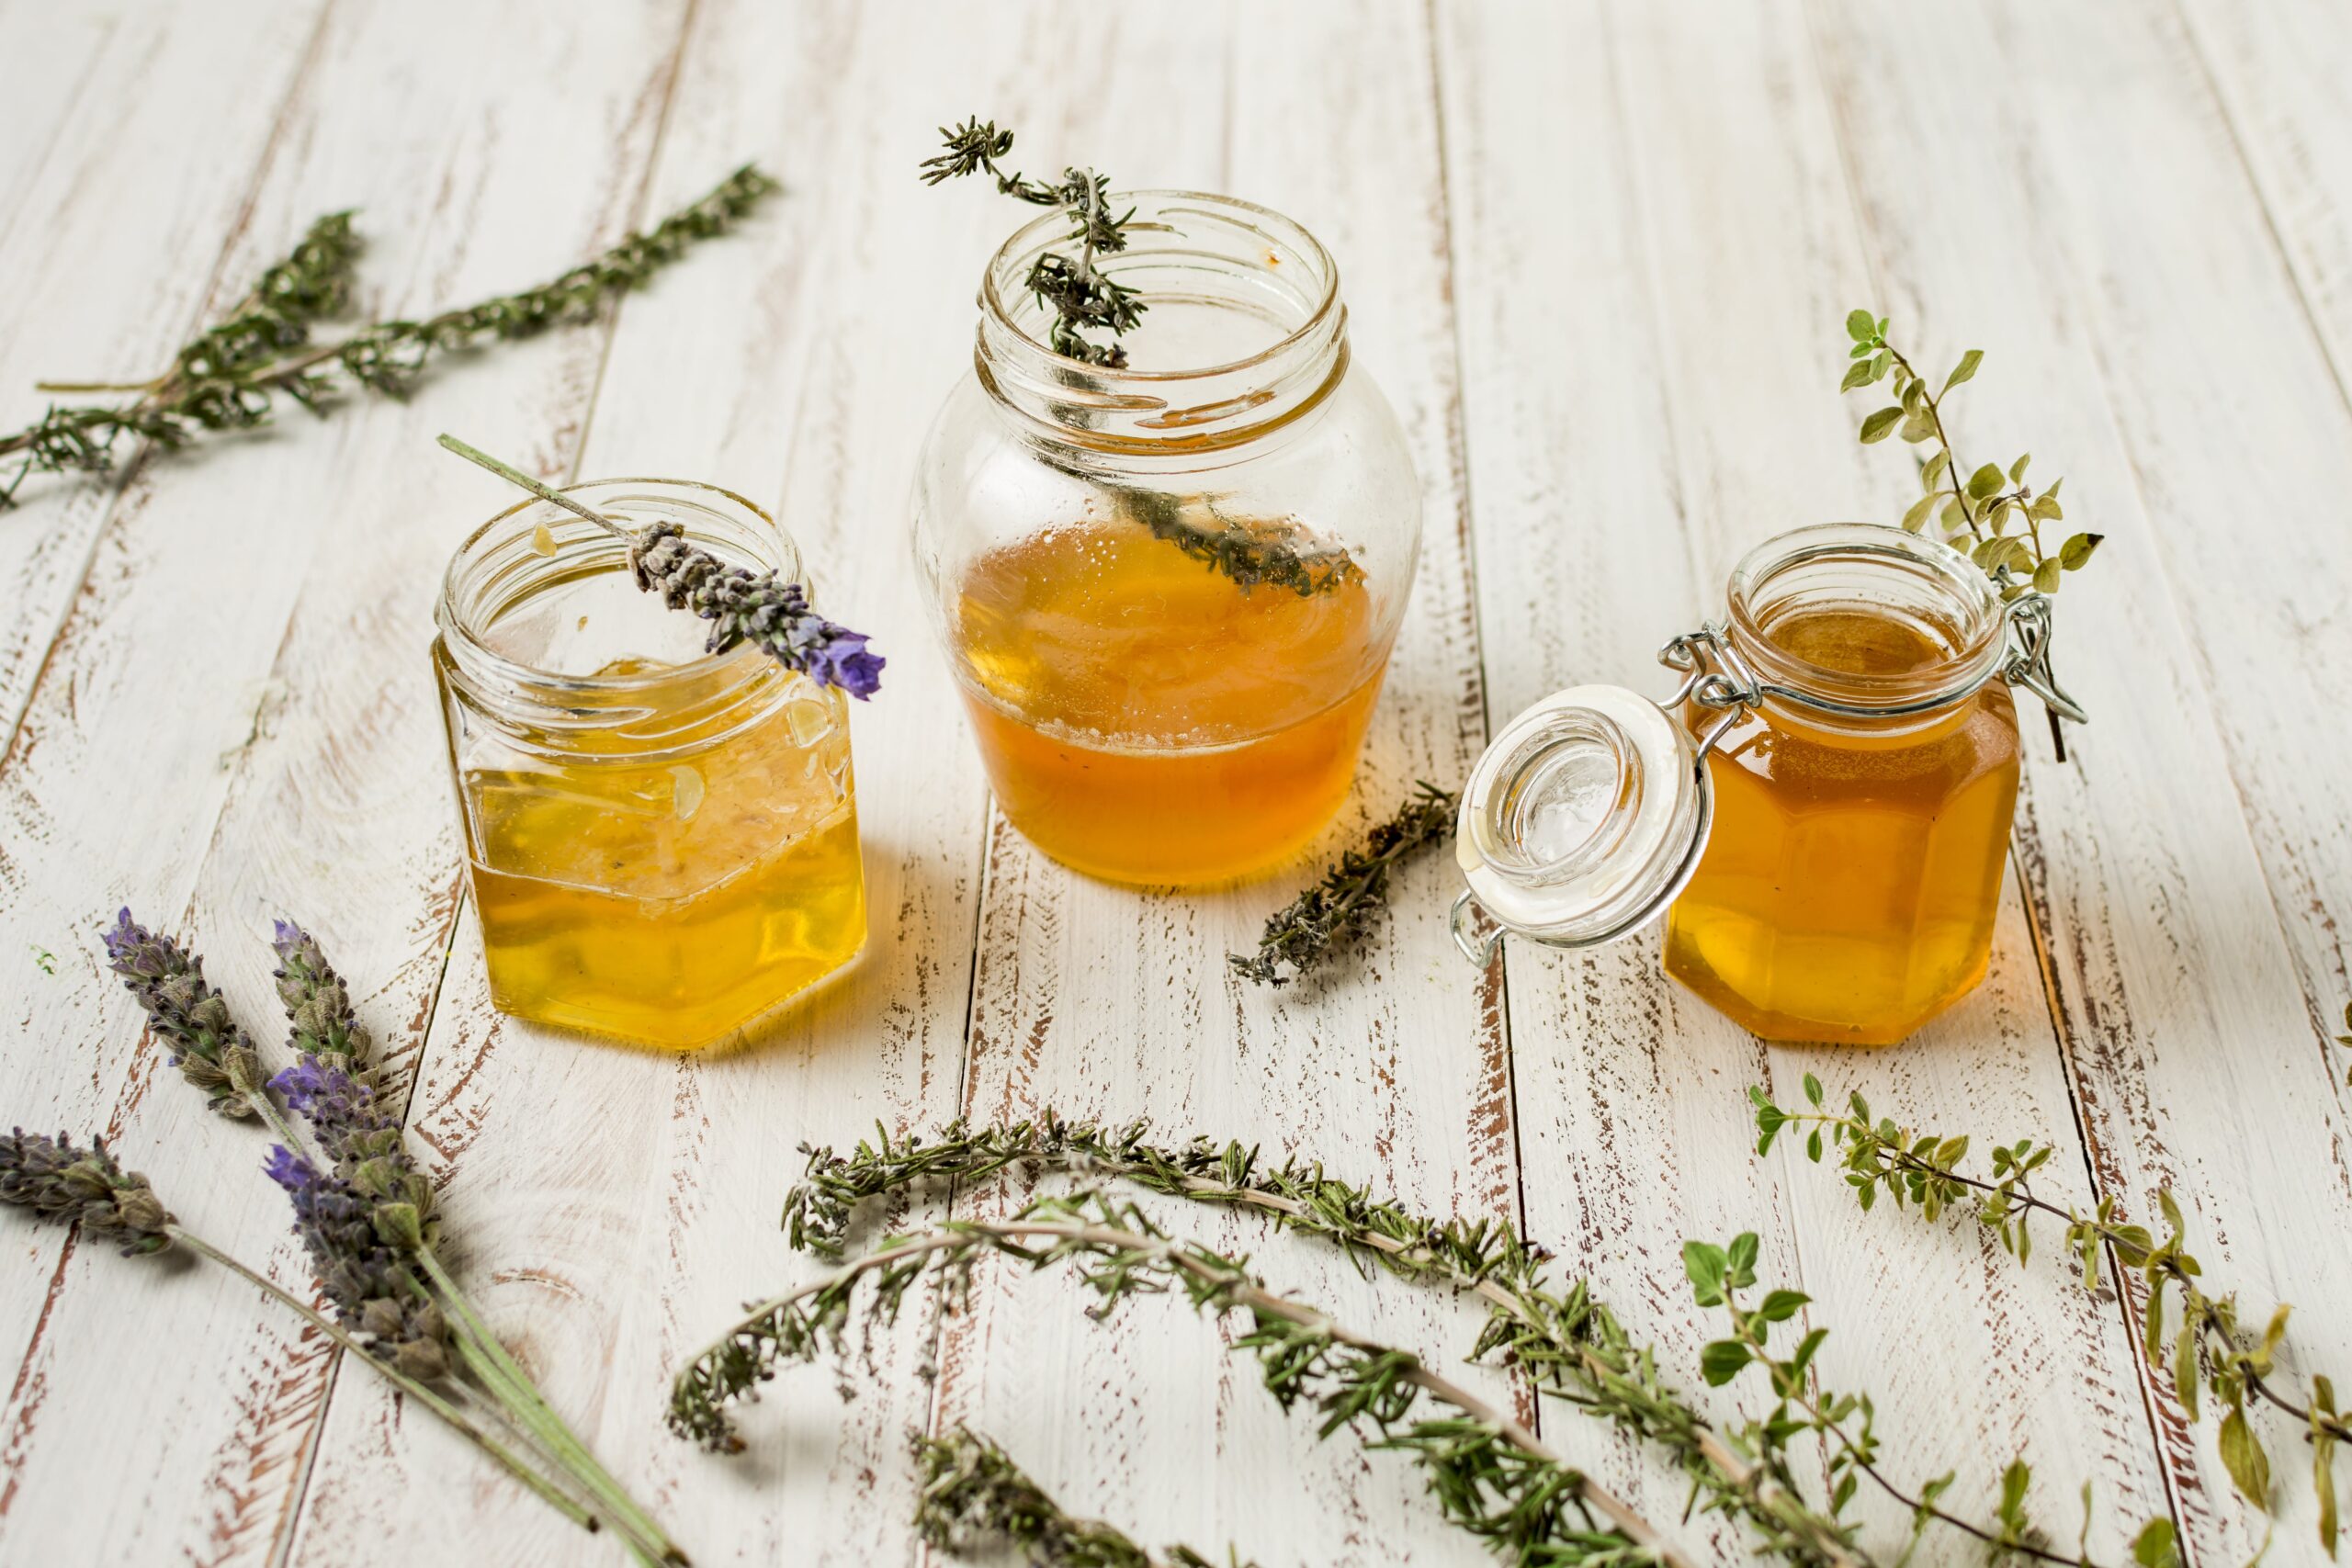 Quels sont les bienfaits du miel de thym ?